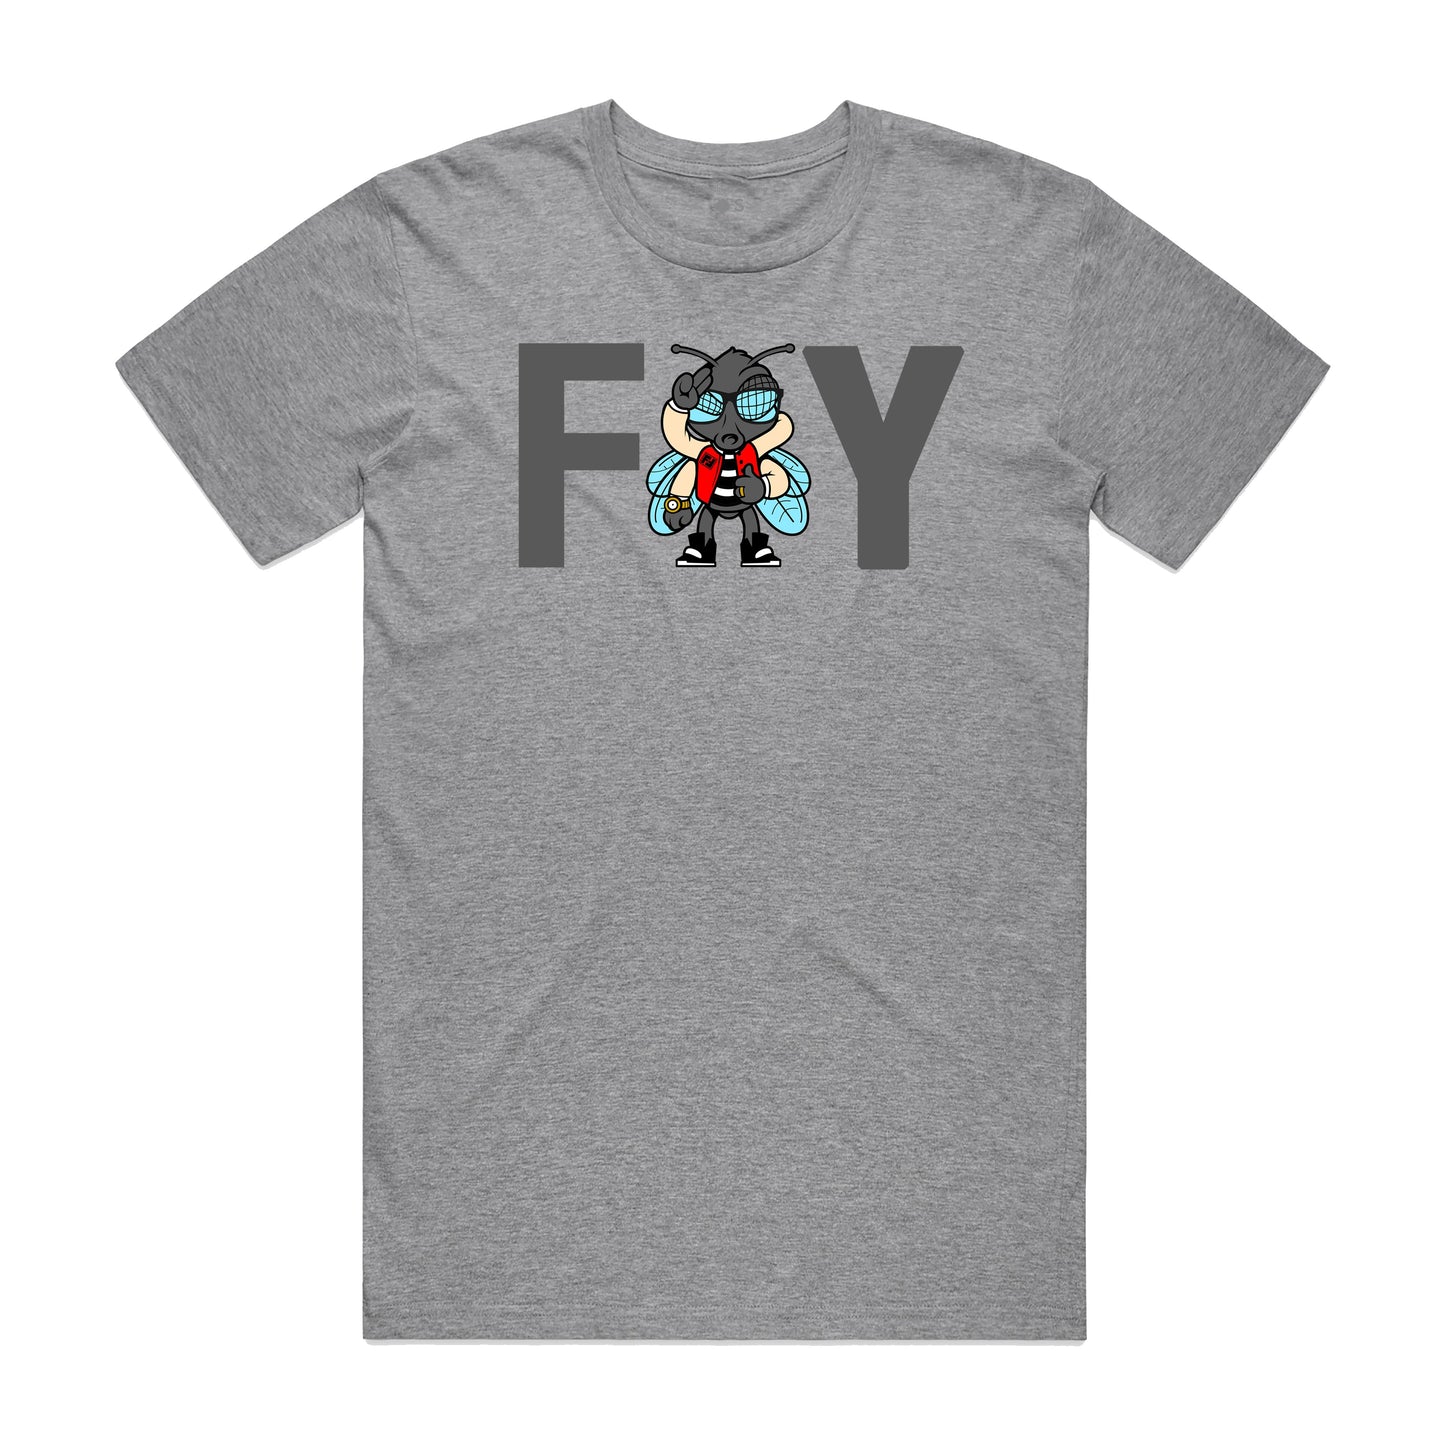 FLY Statement Unisex T-Shirt - Heather Grey